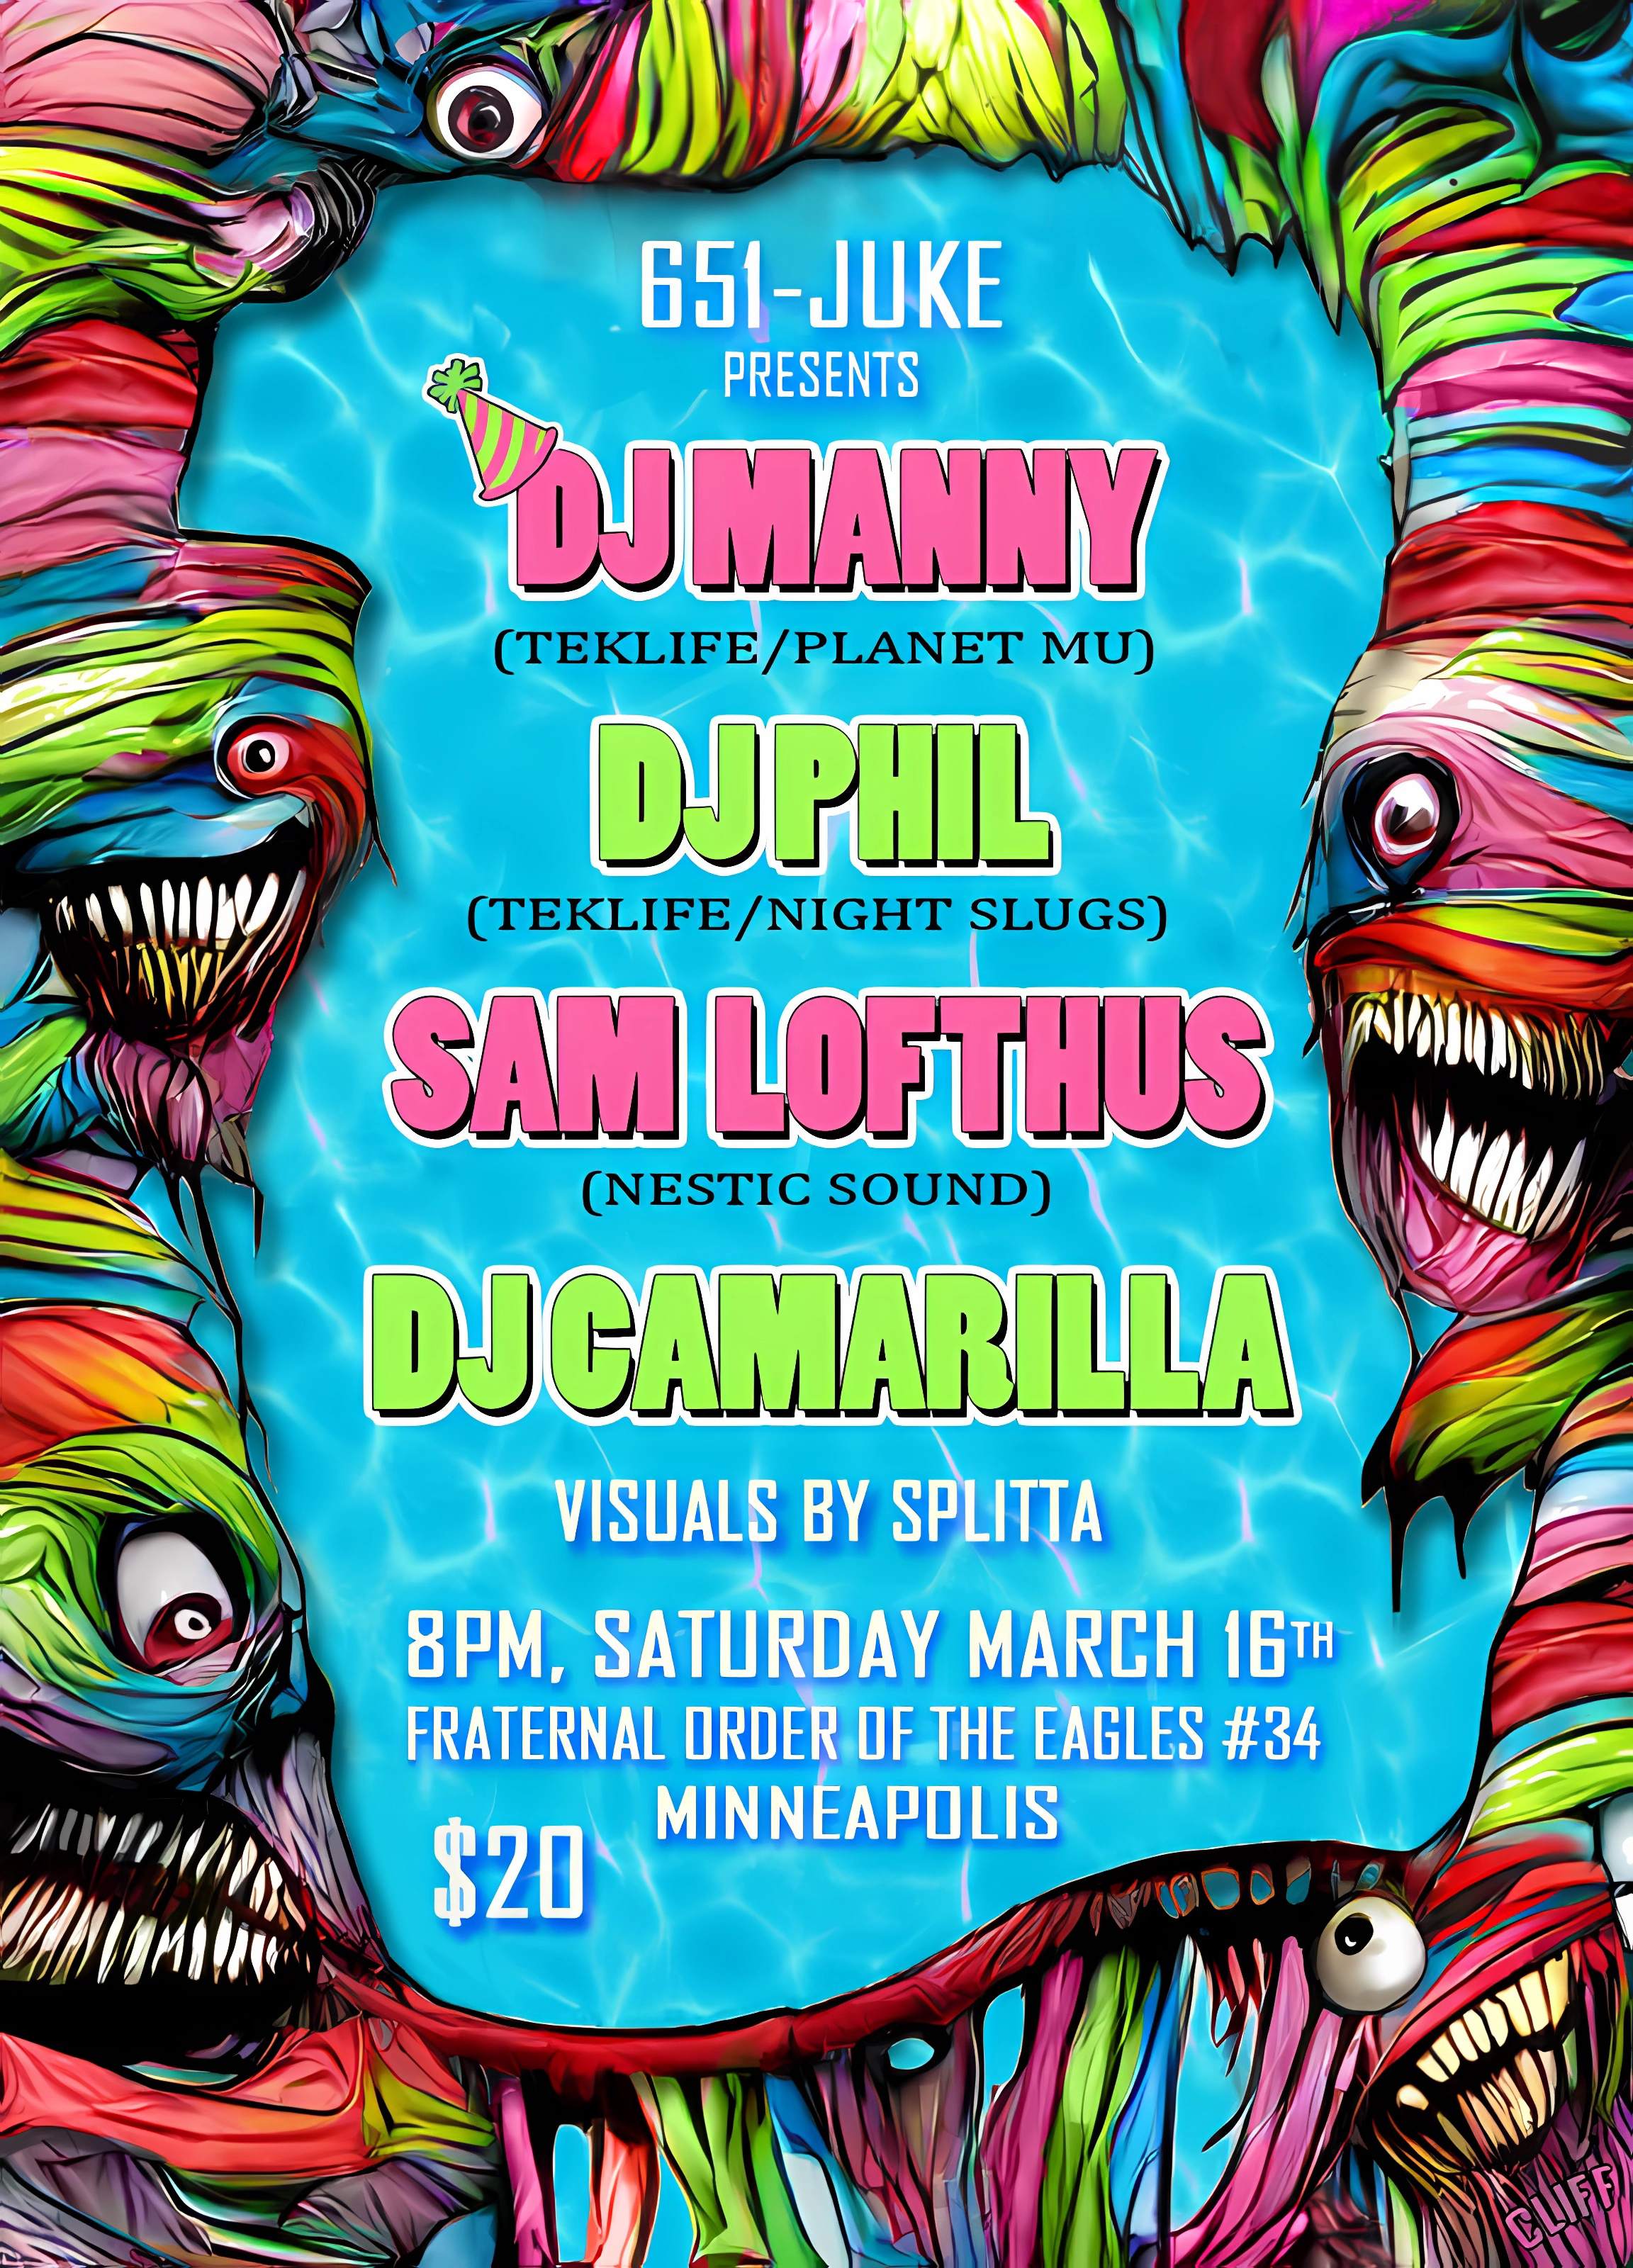 612-JUKE - DJ Manny and DJ Phil in Minneapolis - Página frontal